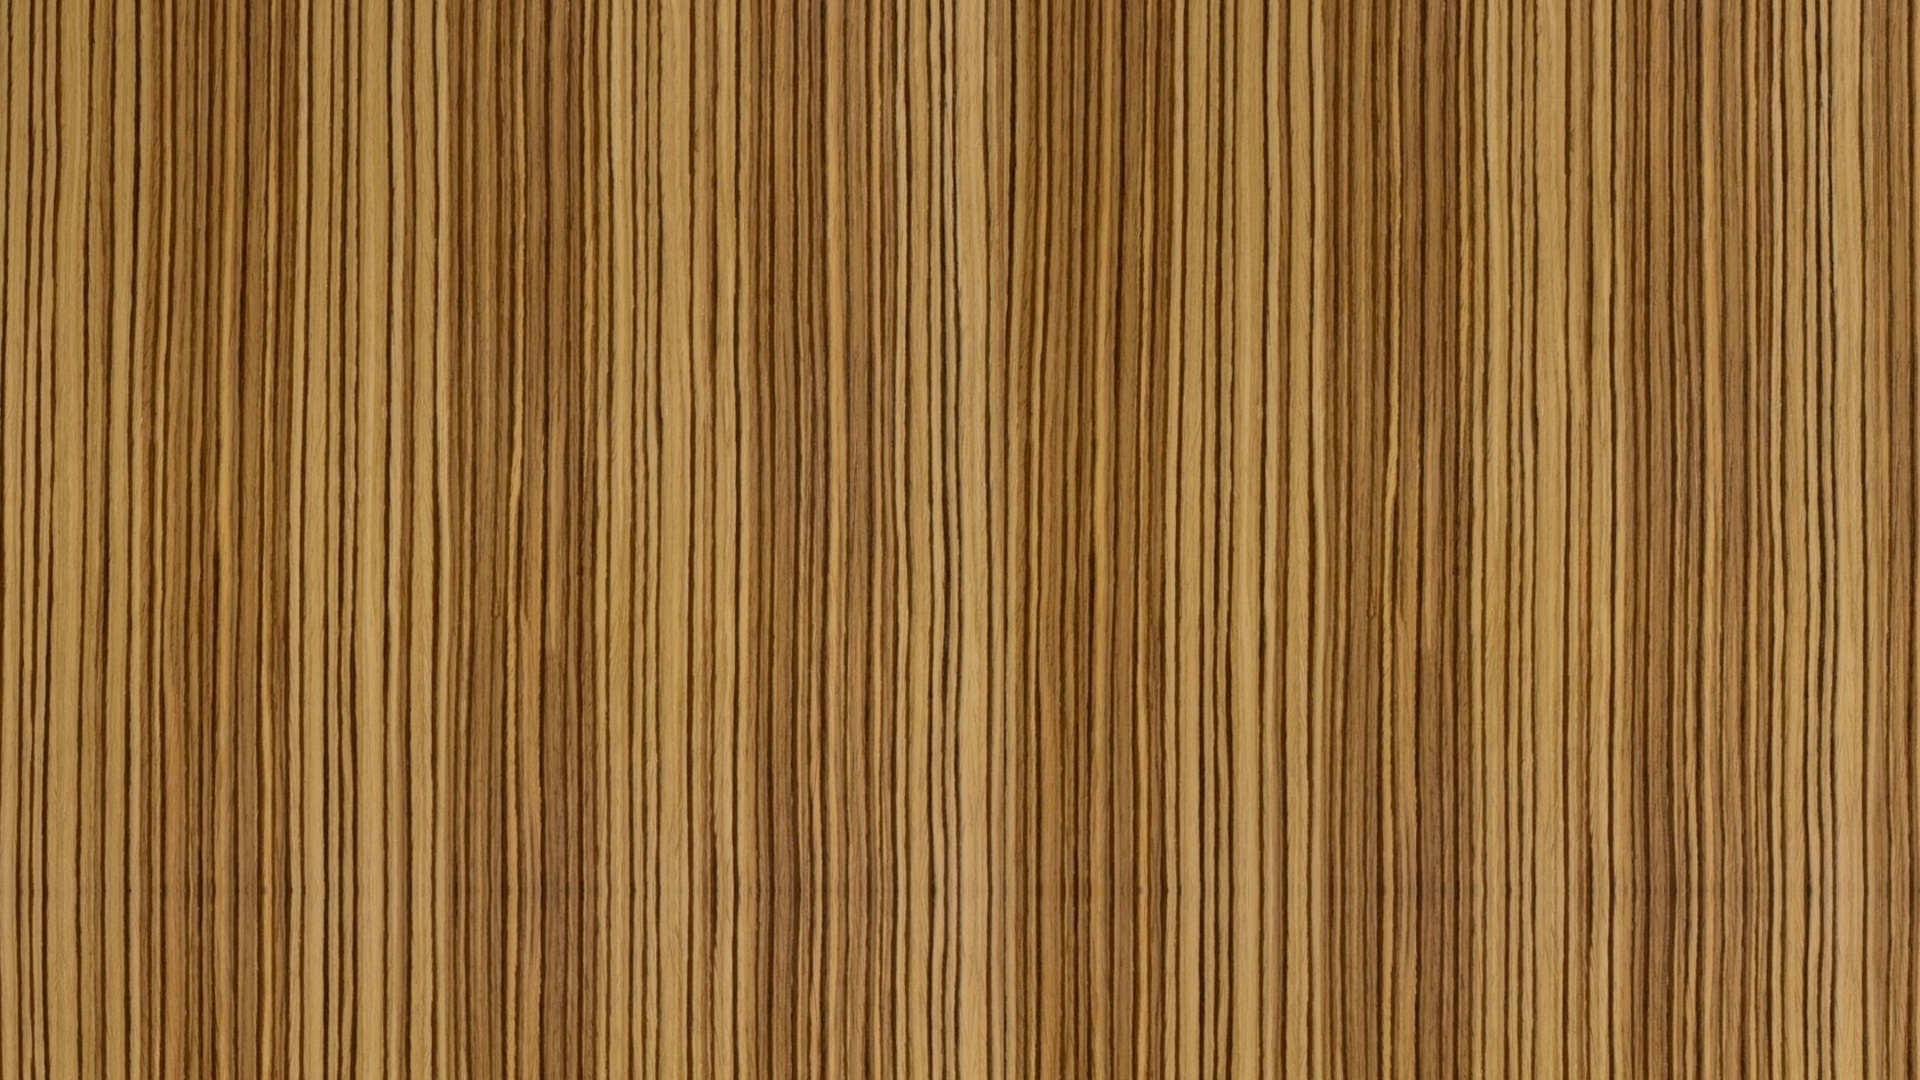 Wooden Desk Wallpapers Wooden Desk Backgrounds Images 